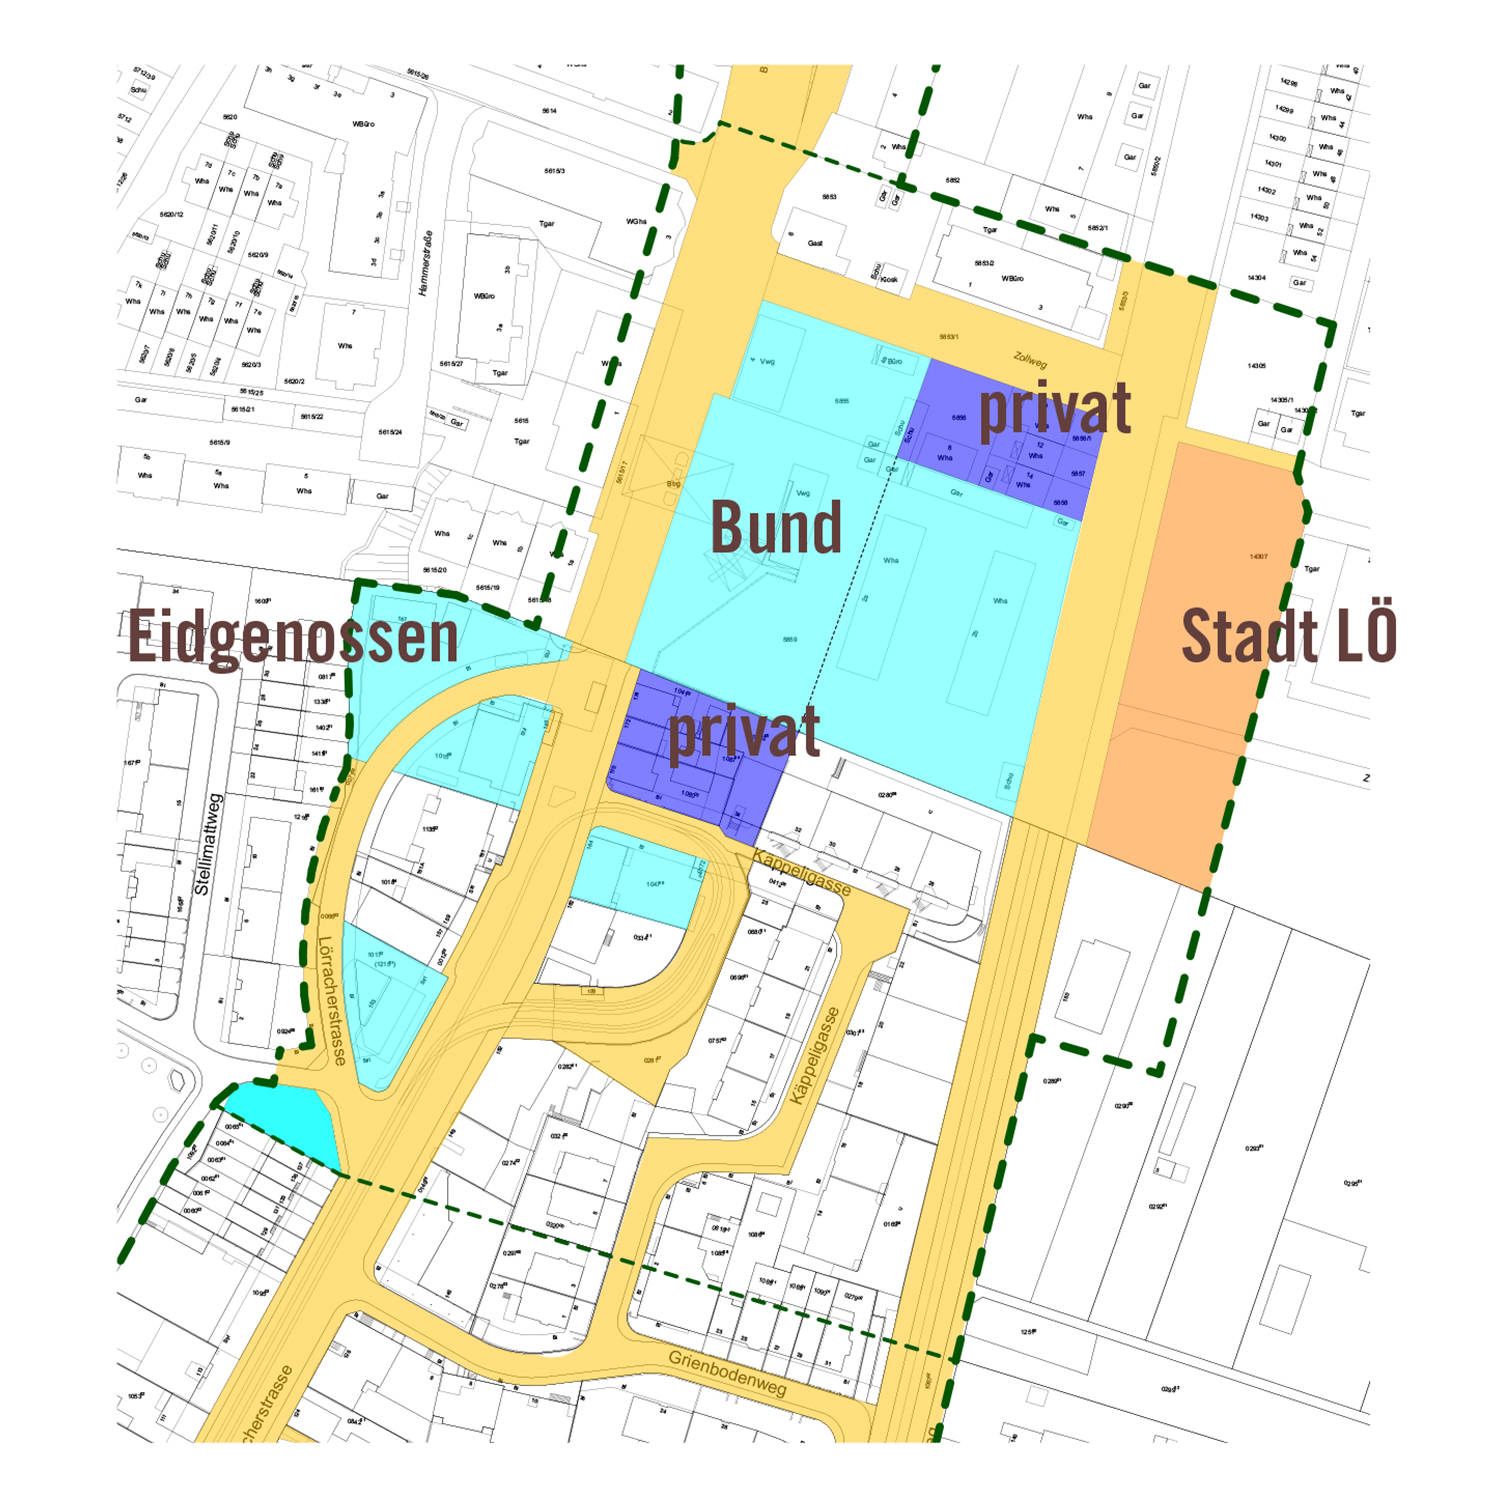 Der Zoll soll kompakter werden, um neue Flächen (z.B. für eine Begegnungszone) zu gewinnen. Das Riehener Stettenfeld ist aber nicht Teil des Projekts.